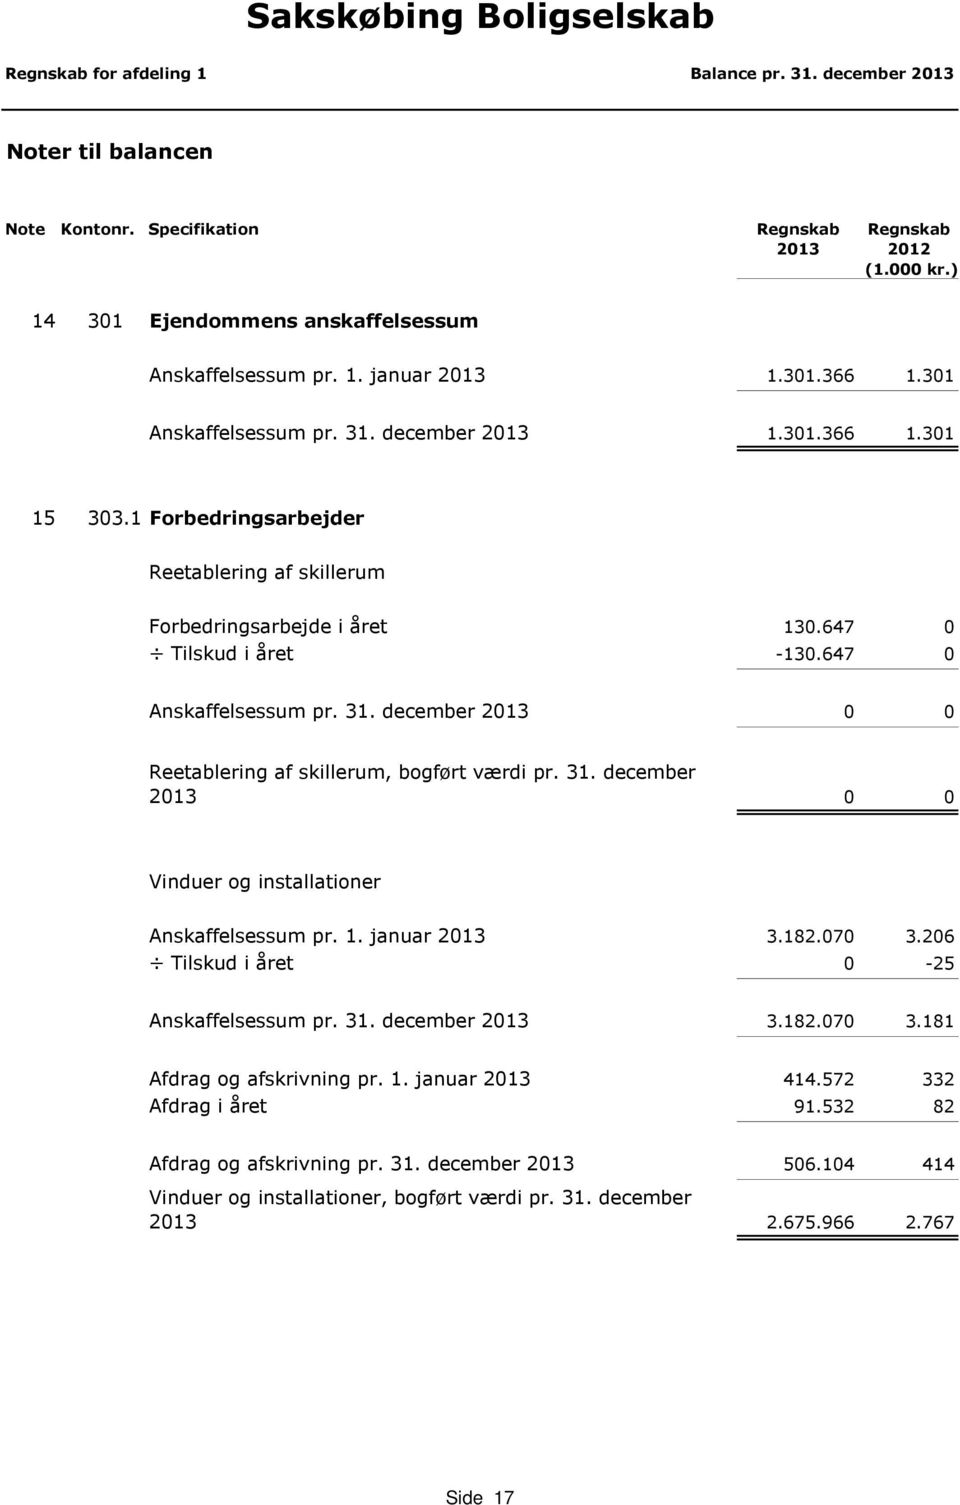 647 0 Anskaffelsessum pr. 31. december 2013 0 0 Reetablering af skillerum, bogført værdi pr. 31. december 2013 0 0 Vinduer og installationer Anskaffelsessum pr. 1. januar 2013 3.182.070 3.